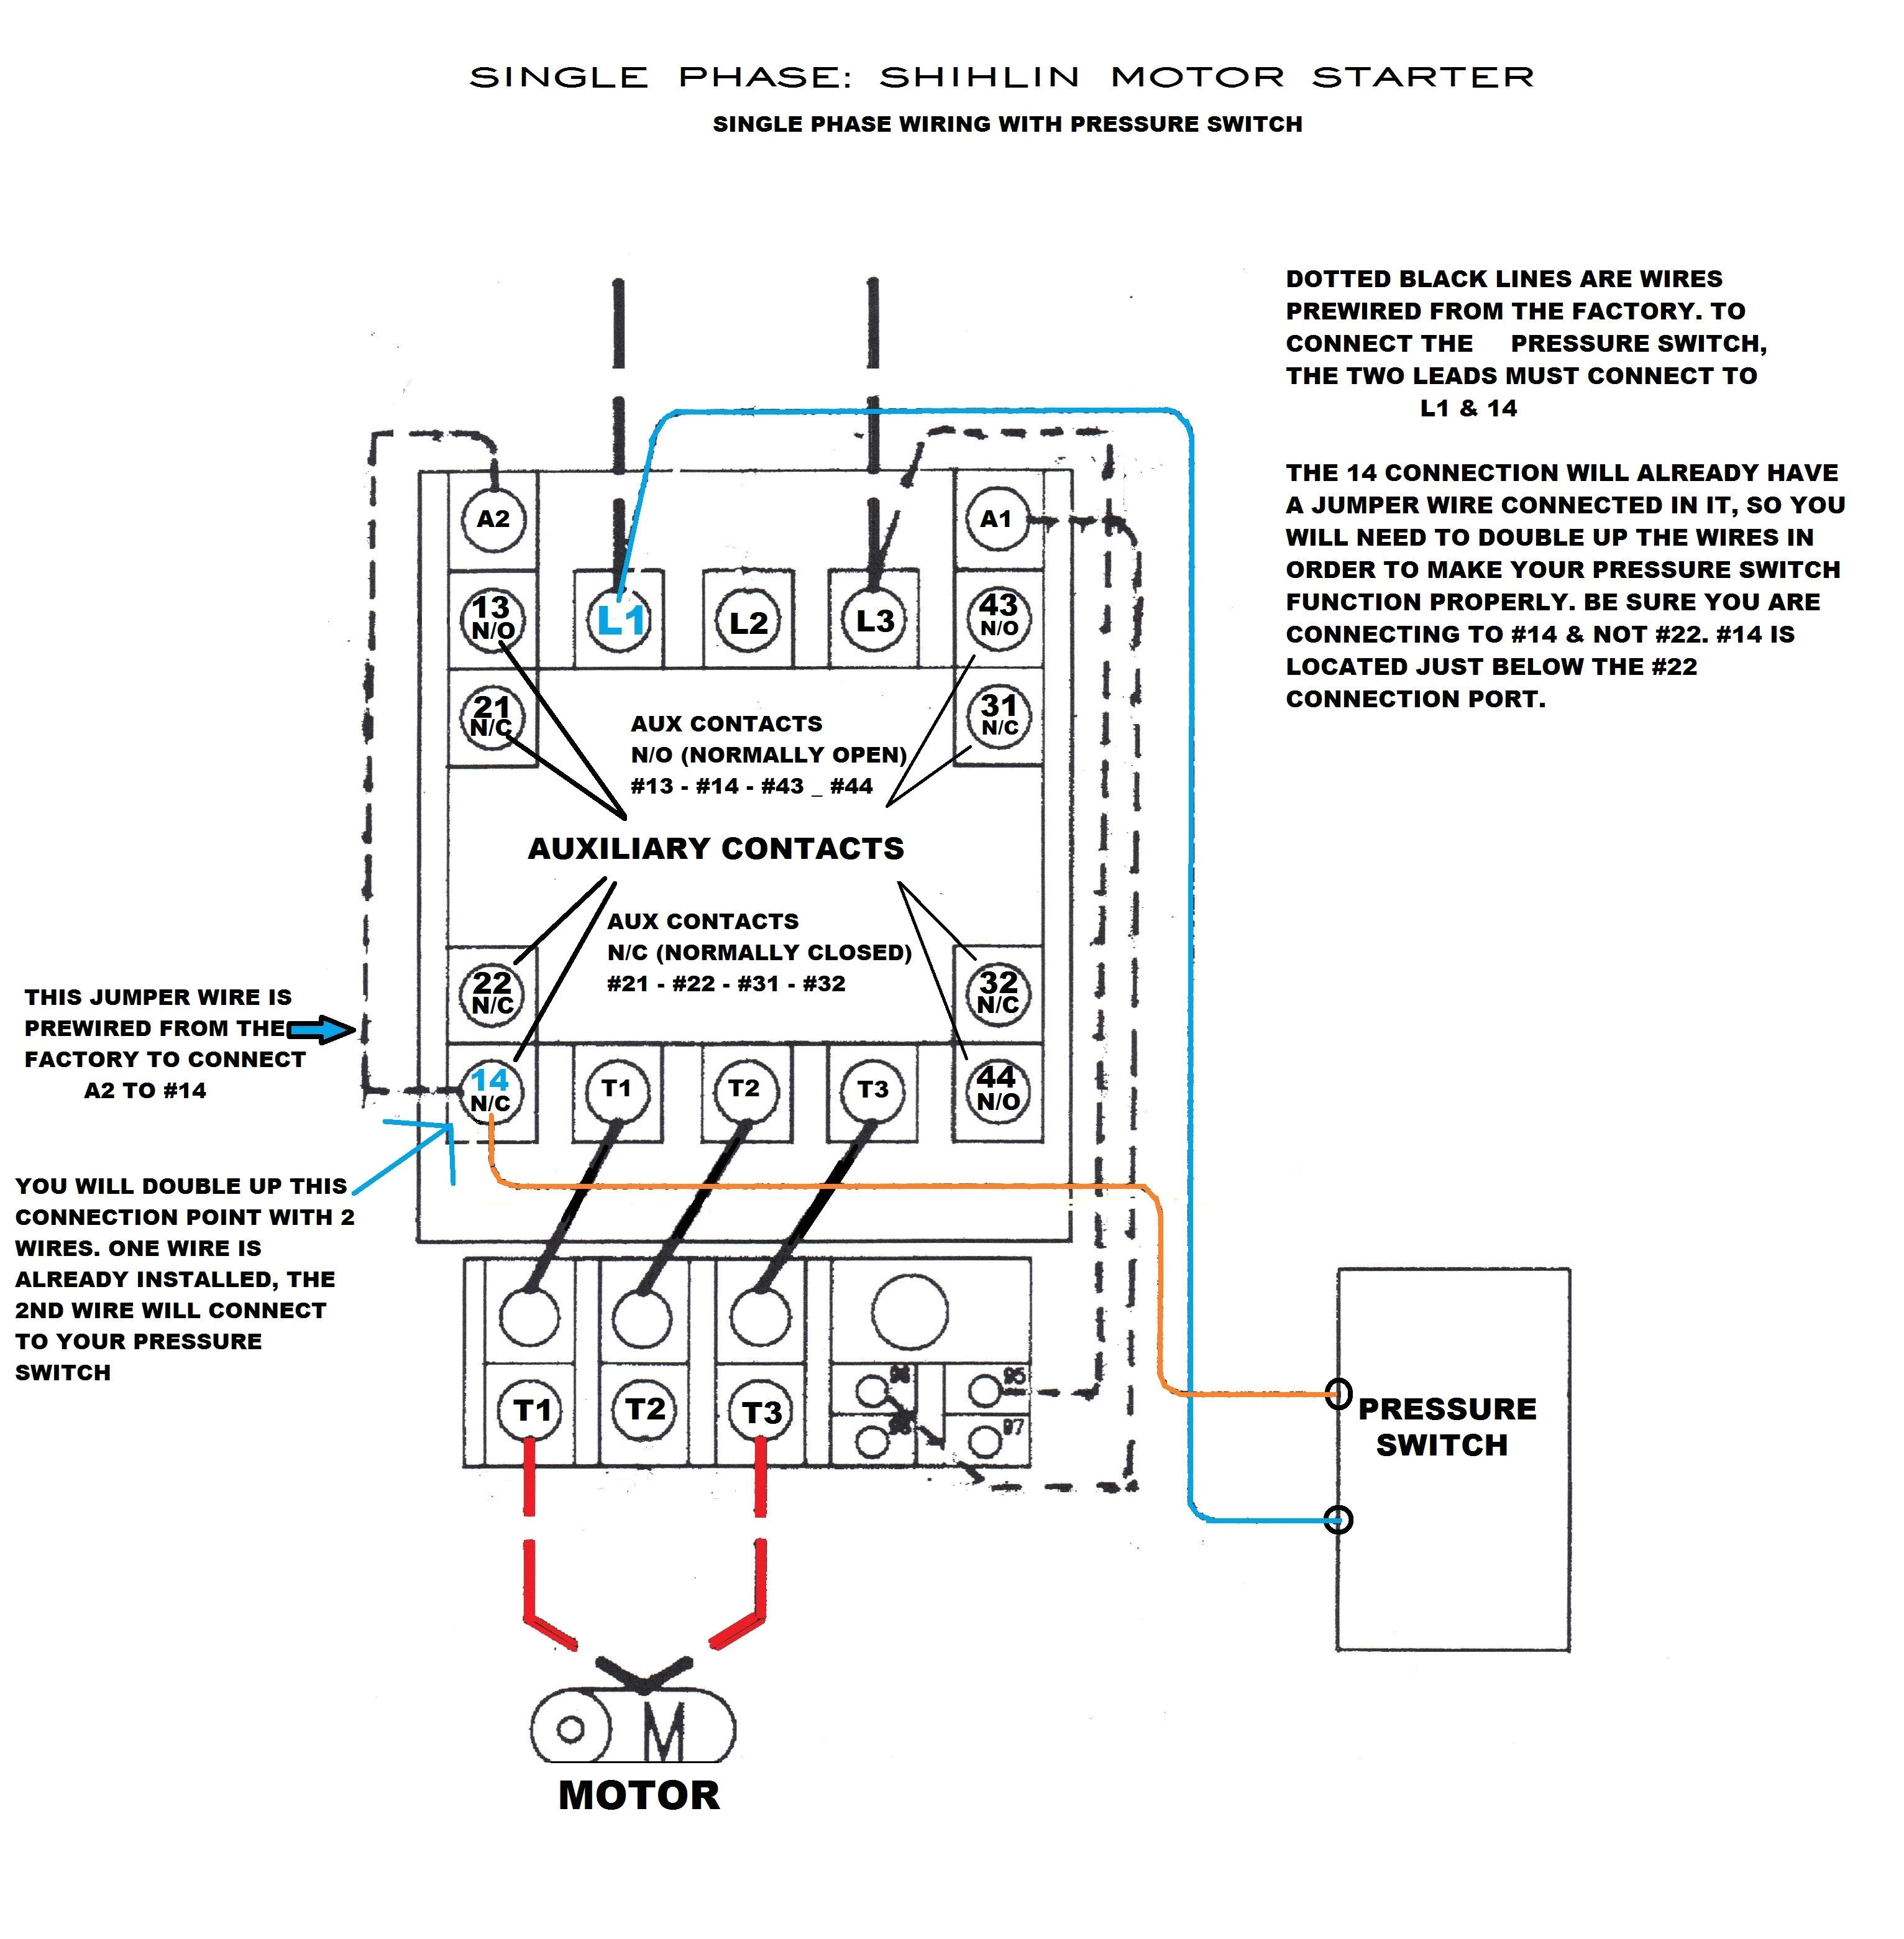 pm 8000 wiring diagram elegant schneider electric wiring diagrams explained wiring diagrams